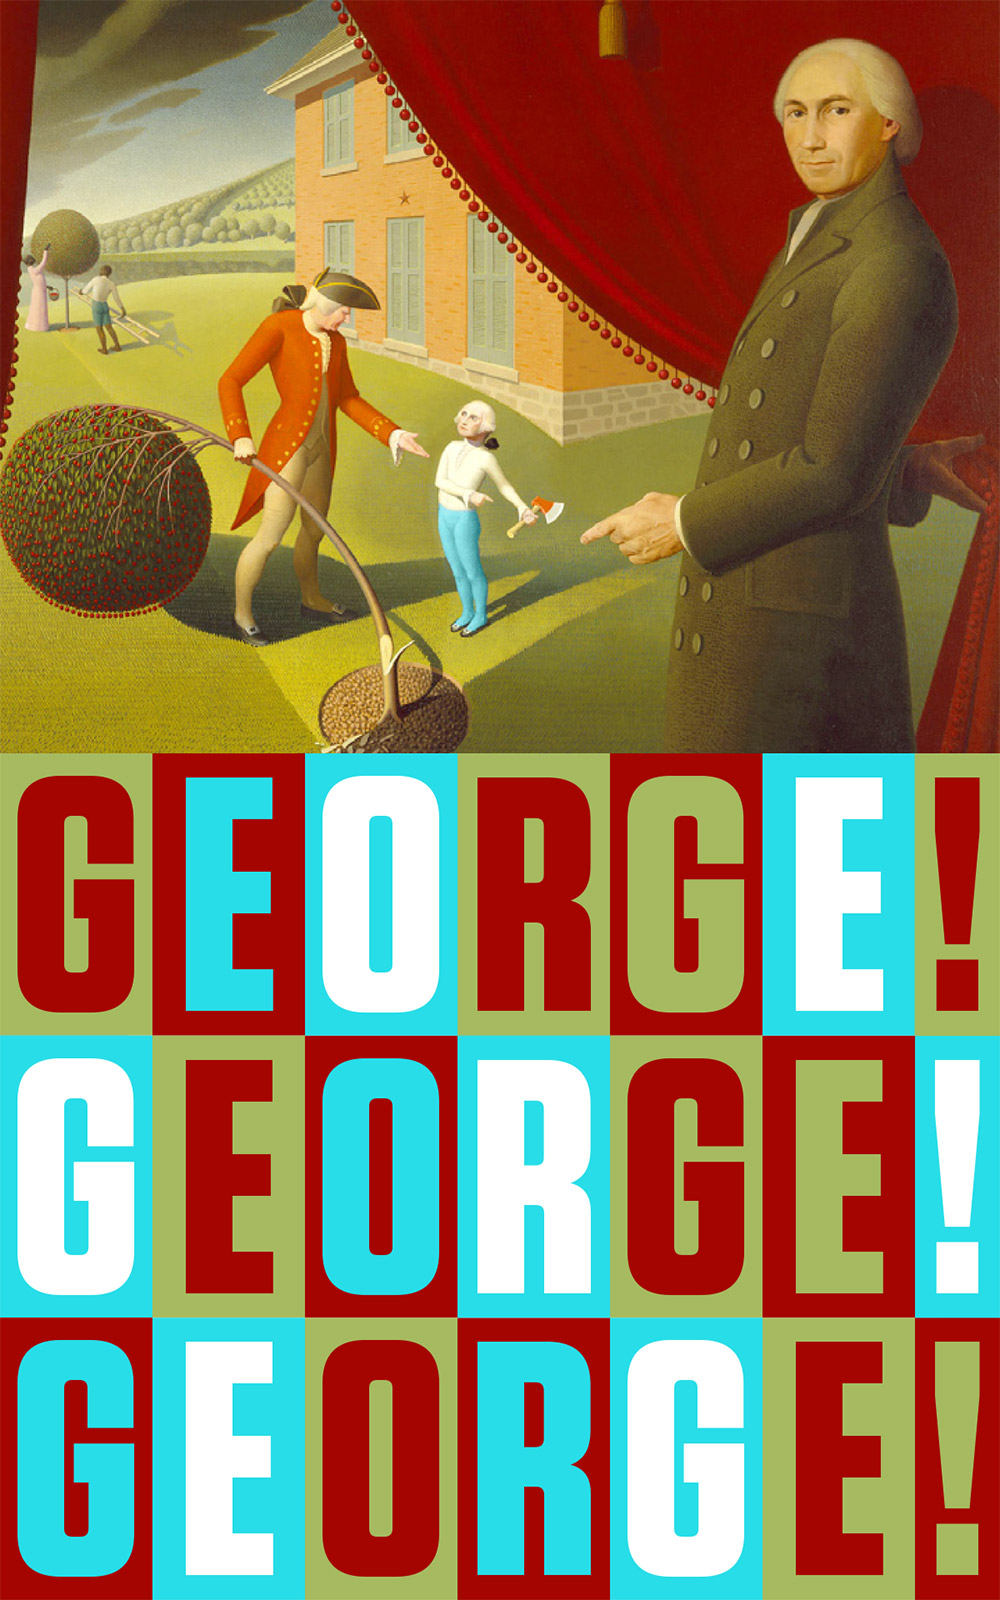 GEORGE!